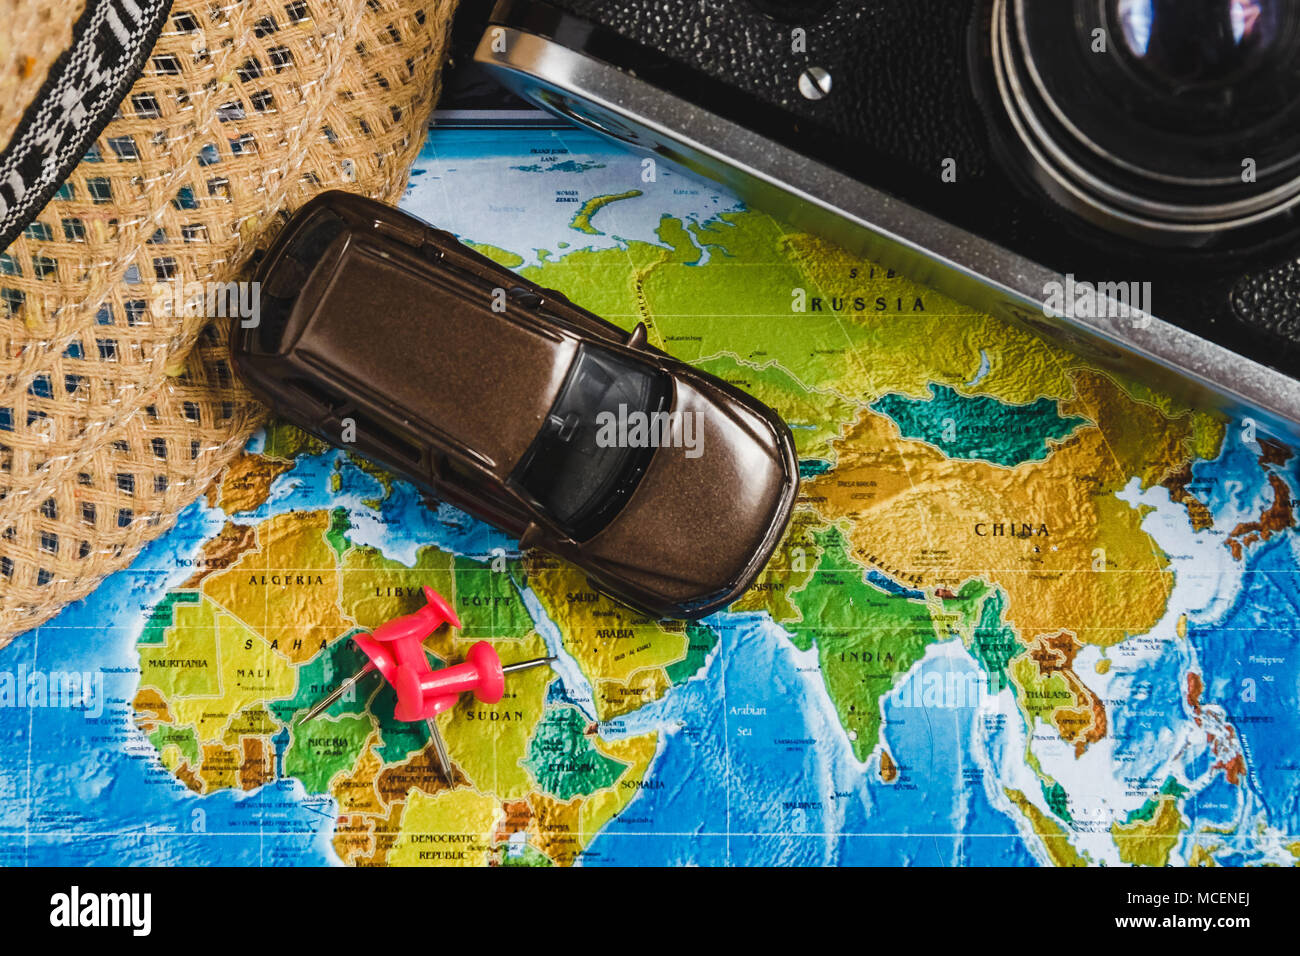 Destination Voyage automobile Points sur la carte du monde a indiqué avec des punaises, corde rouge et profondeur de champ Banque D'Images